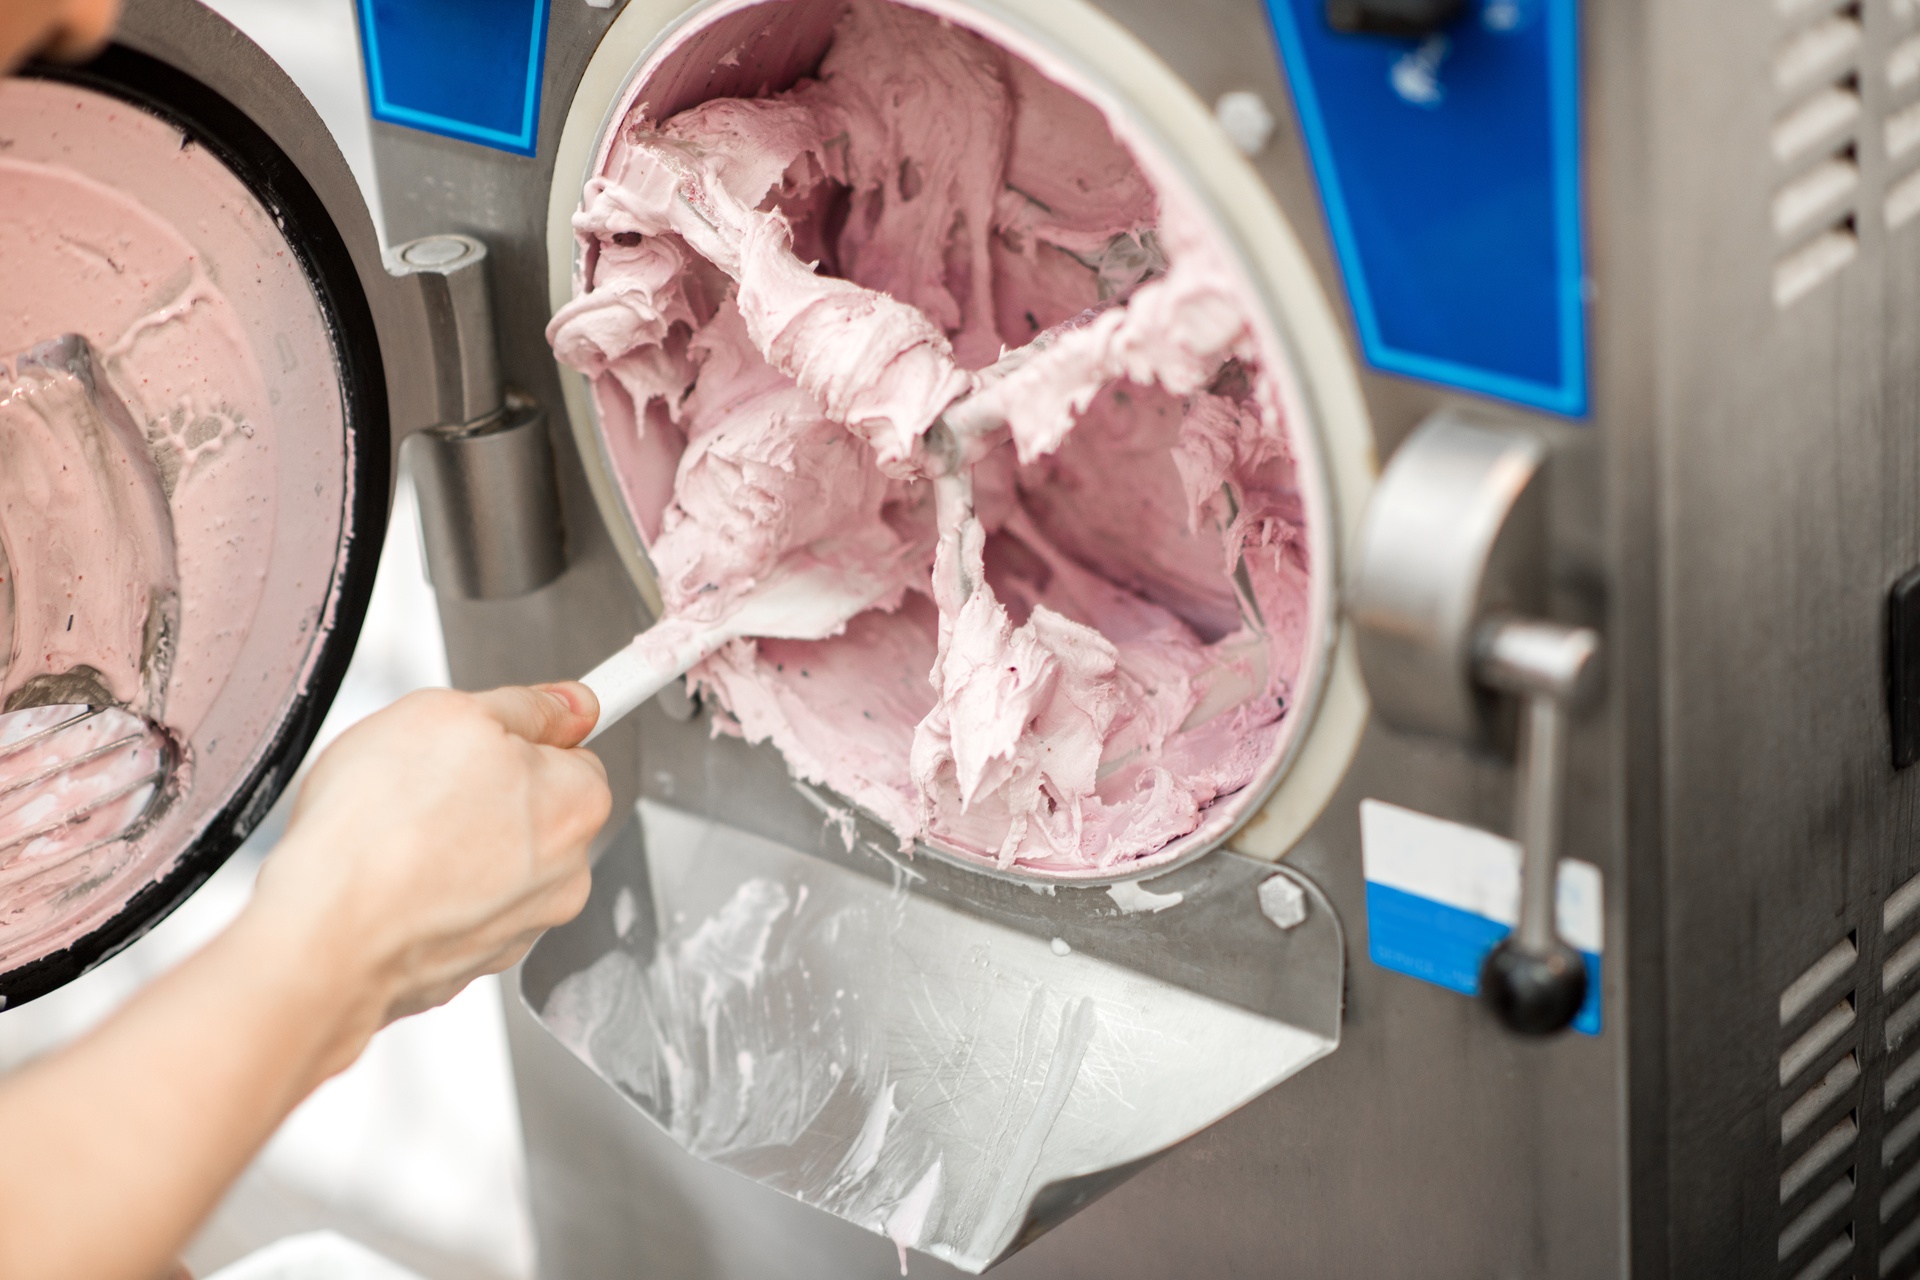 ChatGPT: la diffusione delle macchine per la produzione del gelato in casa non hanno comportato la sparizione delle gelaterie dalle città